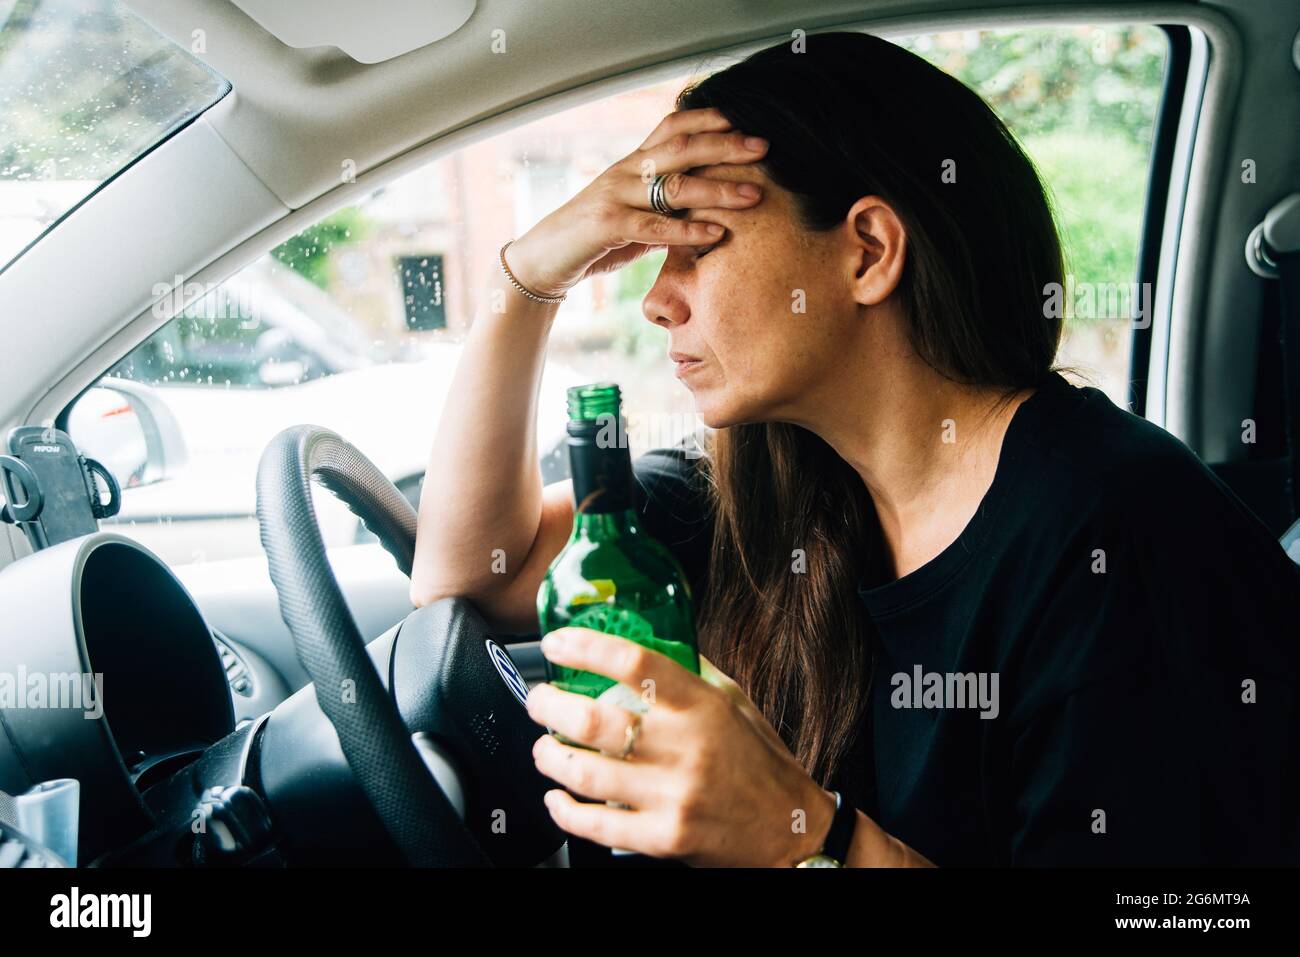 Eine Frau mit gemischter Rasse, die in ihrem Auto sitzt und eine Flasche Wein trinkt, wobei ihr Kopf in den Händen gestresst aussieht. Mutter mit Depression oder Angst Stockfoto